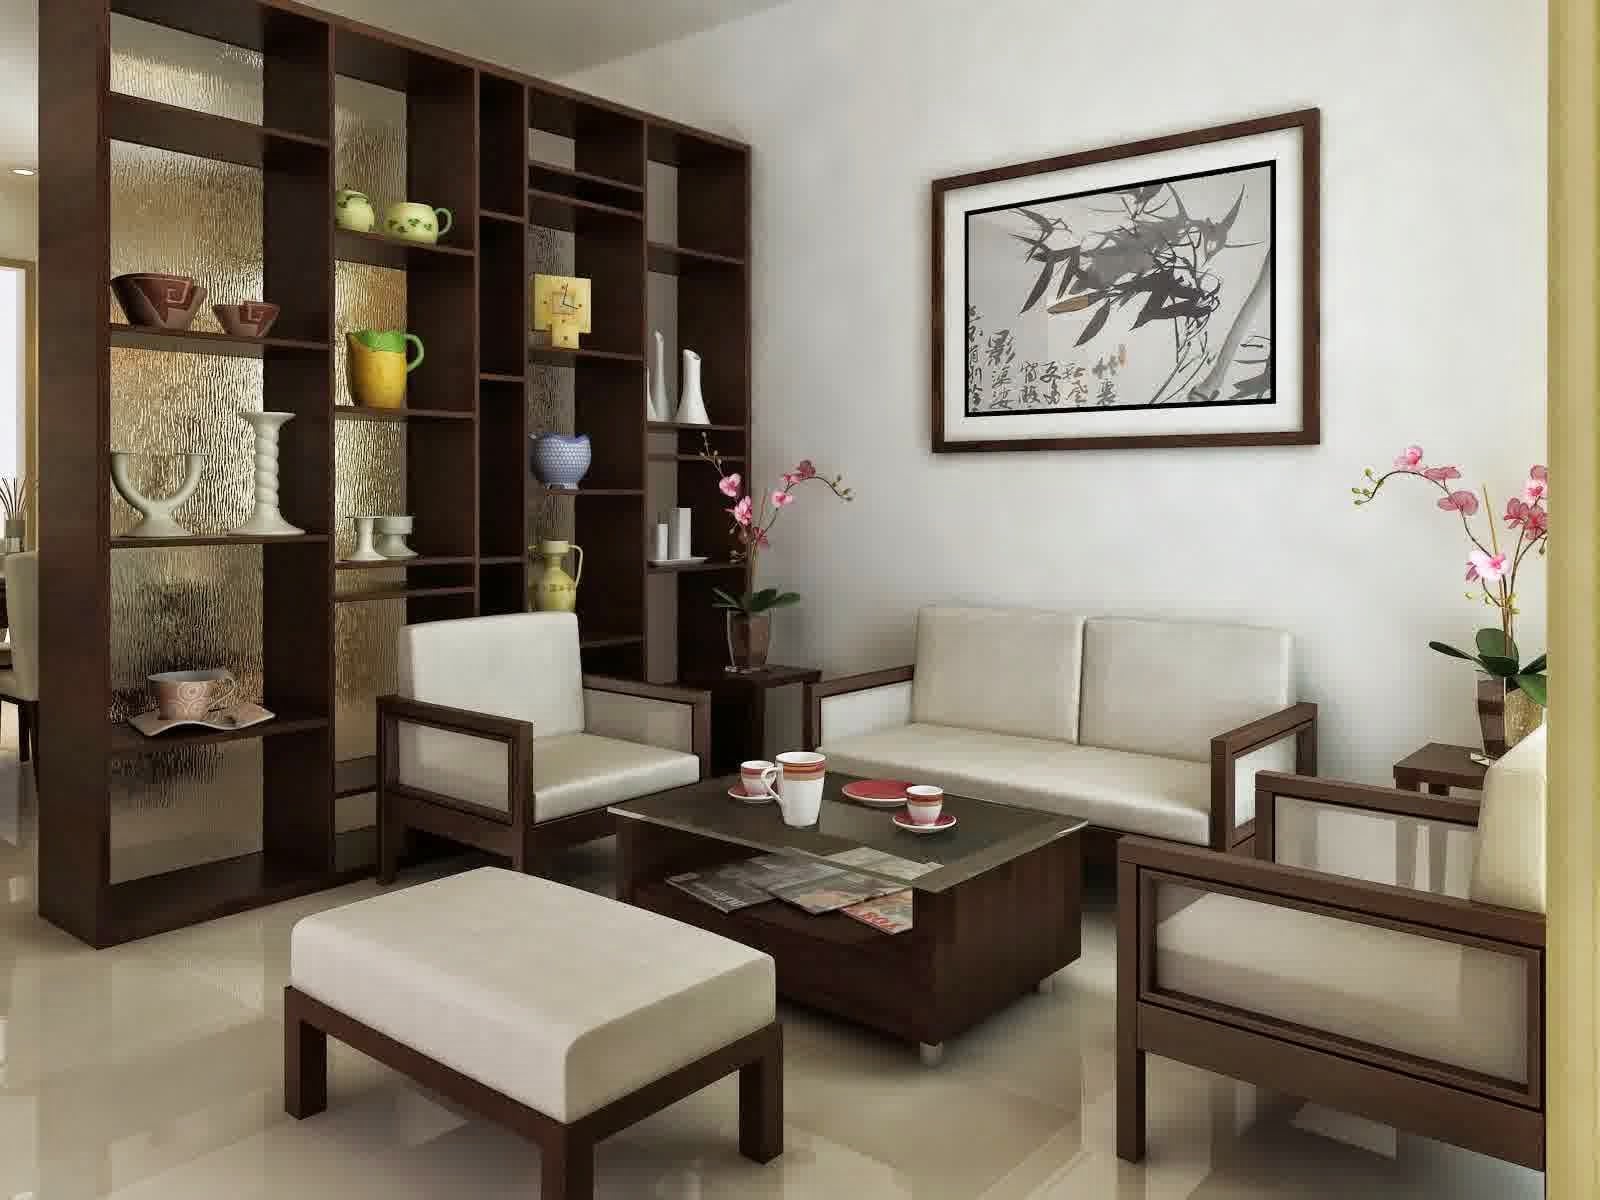 Kemewahan Design Interior Rumah Dengan Furniture Jati 11 Menciptakan Ide Desain Rumah untuk Design Interior Rumah Dengan Furniture Jati